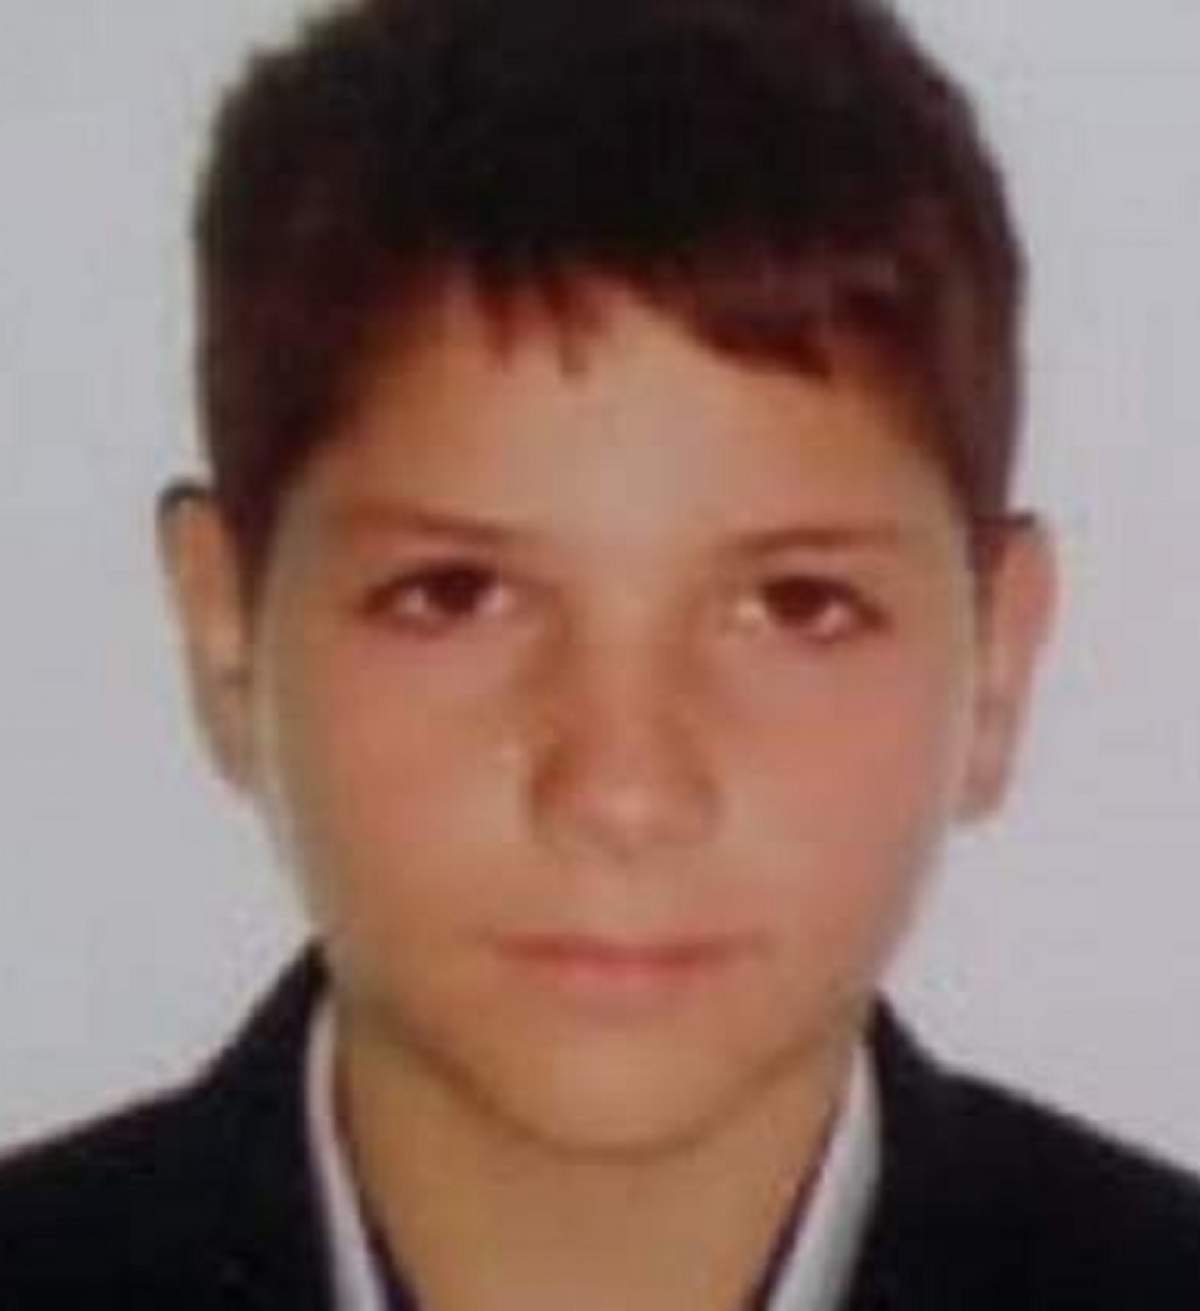 Băiat de 10 ani din Iași, dat dispărut de familie. A plecat la școală și nu s-a mai întors